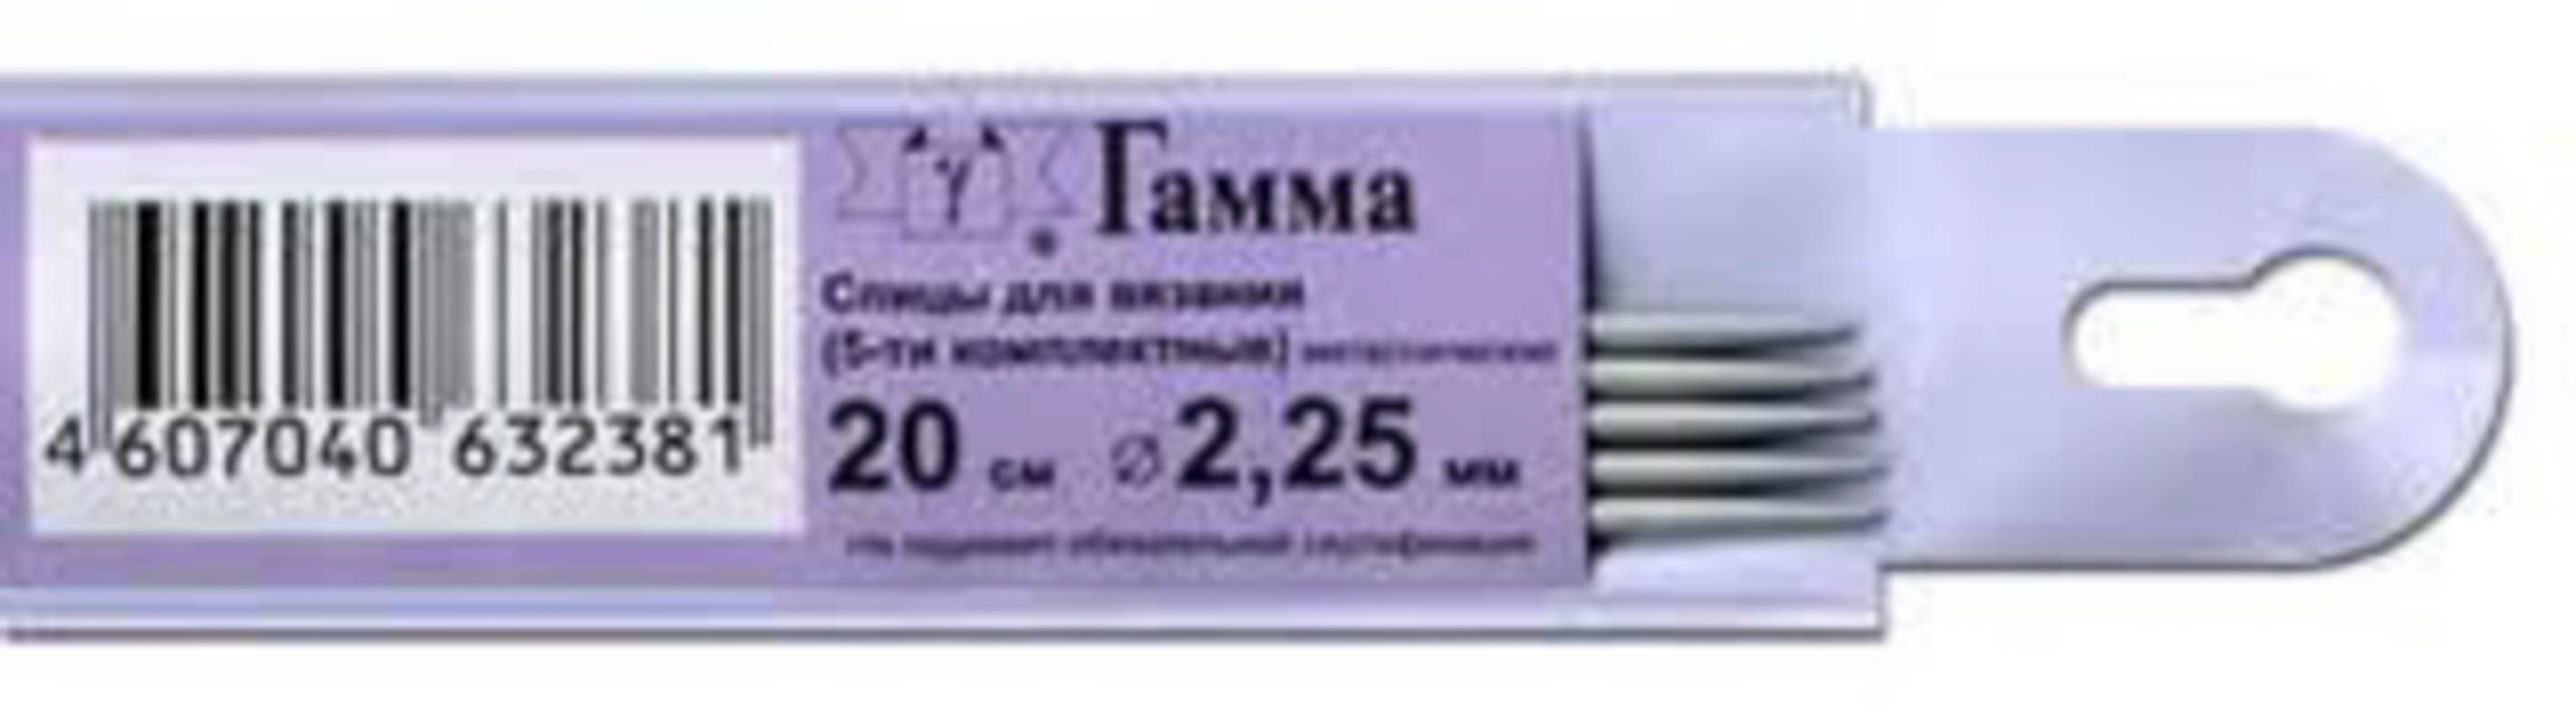 Спицы "GAMMA" 5-ти комплект. KN5 d 2.25 мм 20 см с покрытием